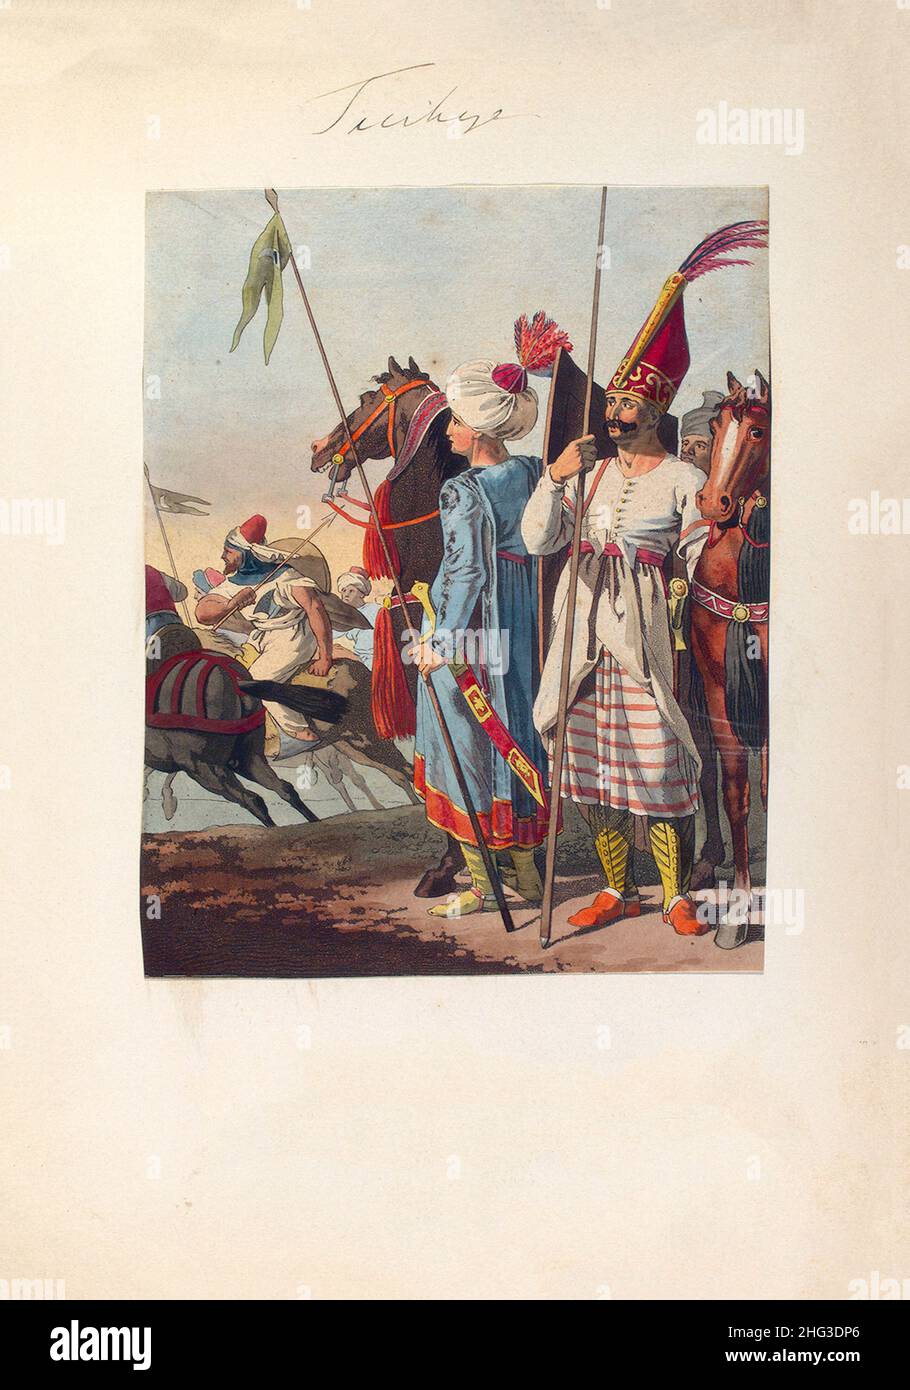 Litografia della cavalleria leggera turca asiatica dell'impero ottomano del 17th-18th secolo. 1910 Foto Stock